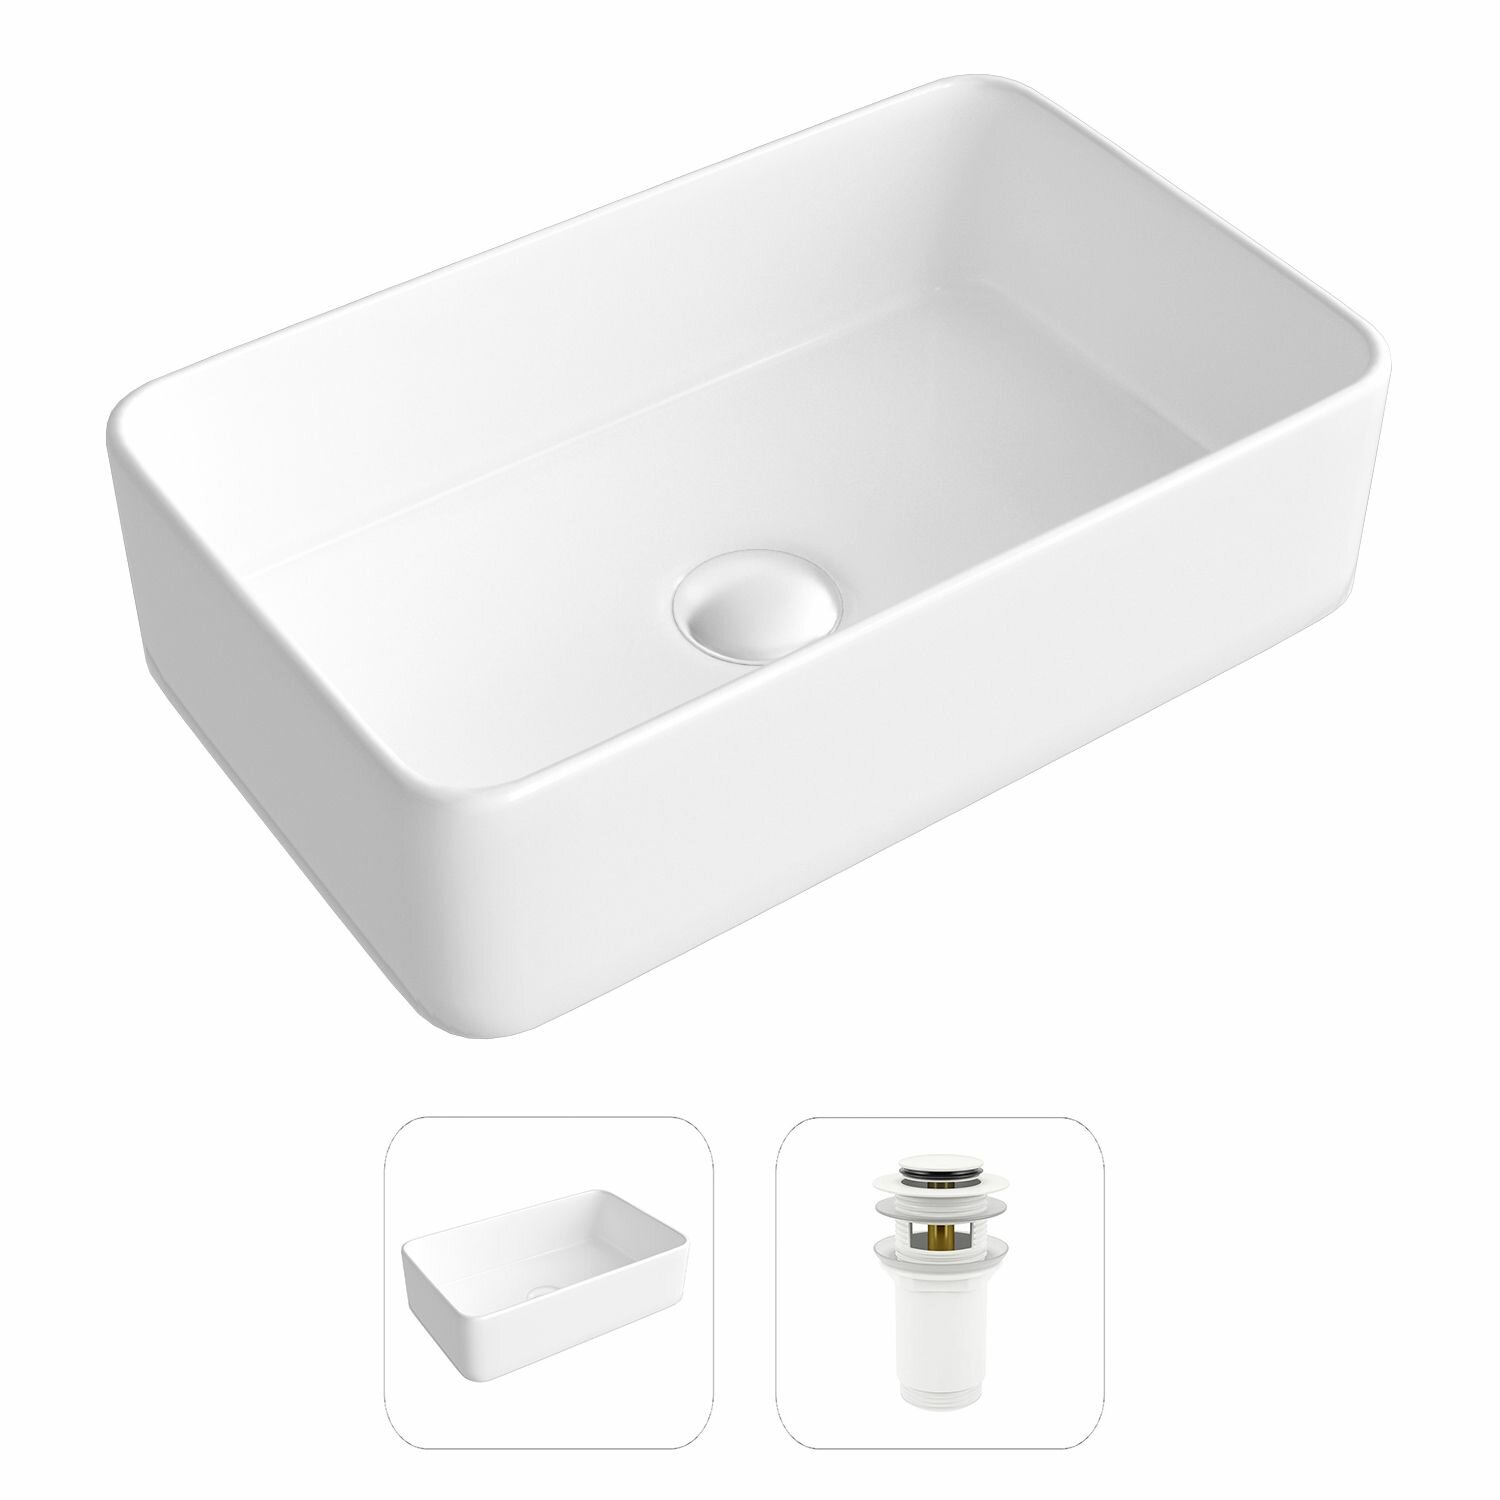 Накладная раковина в ванную Helmken 67448000 комплект 2 в 1: умывальник прямоугольный 48 см, донный клапан click-clack в цвете белый